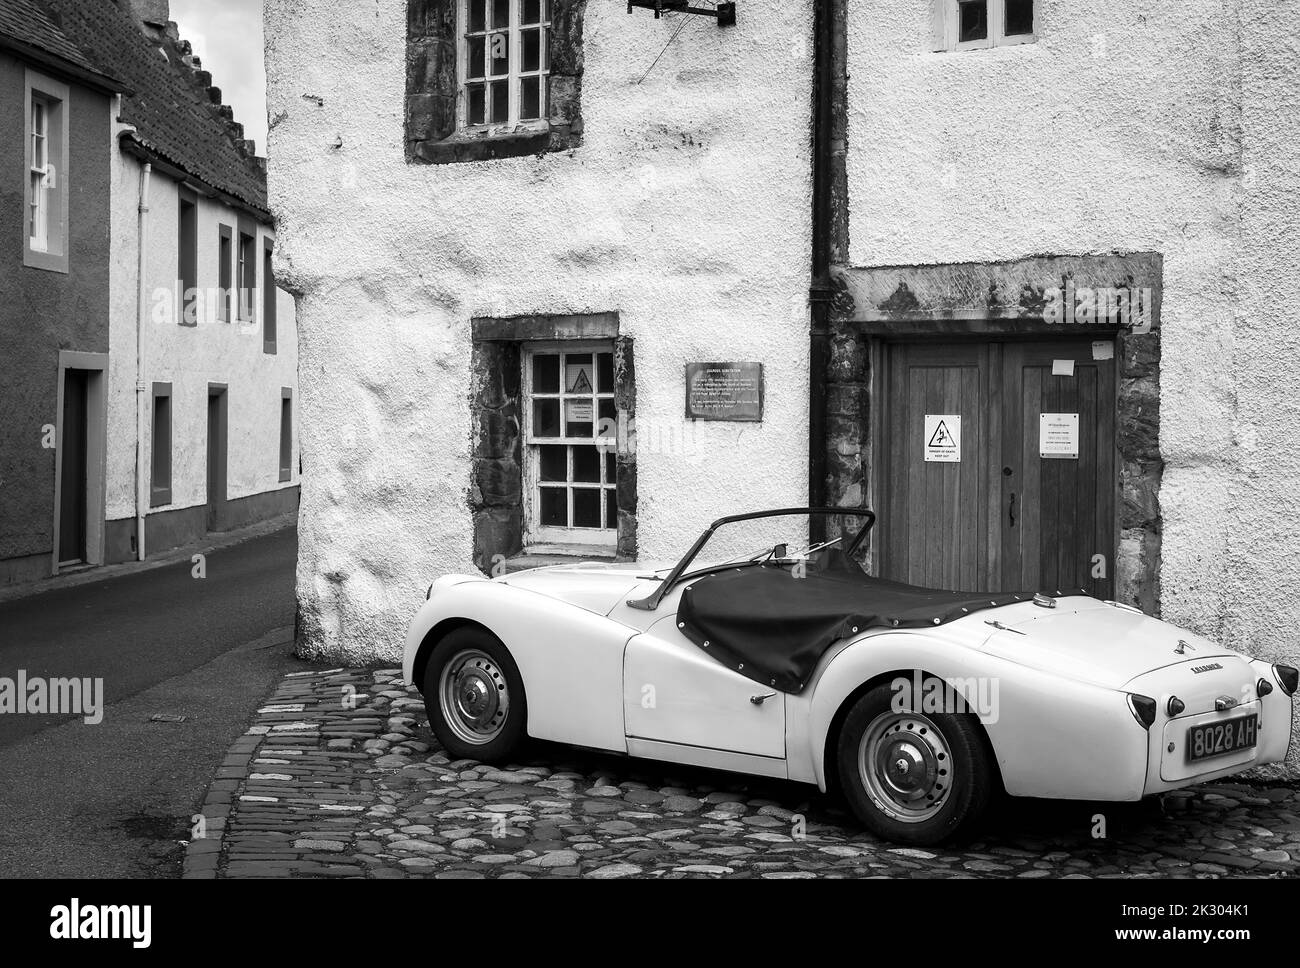 Une voiture classique garée dans les rues pittoresques de Culross en Écosse Banque D'Images